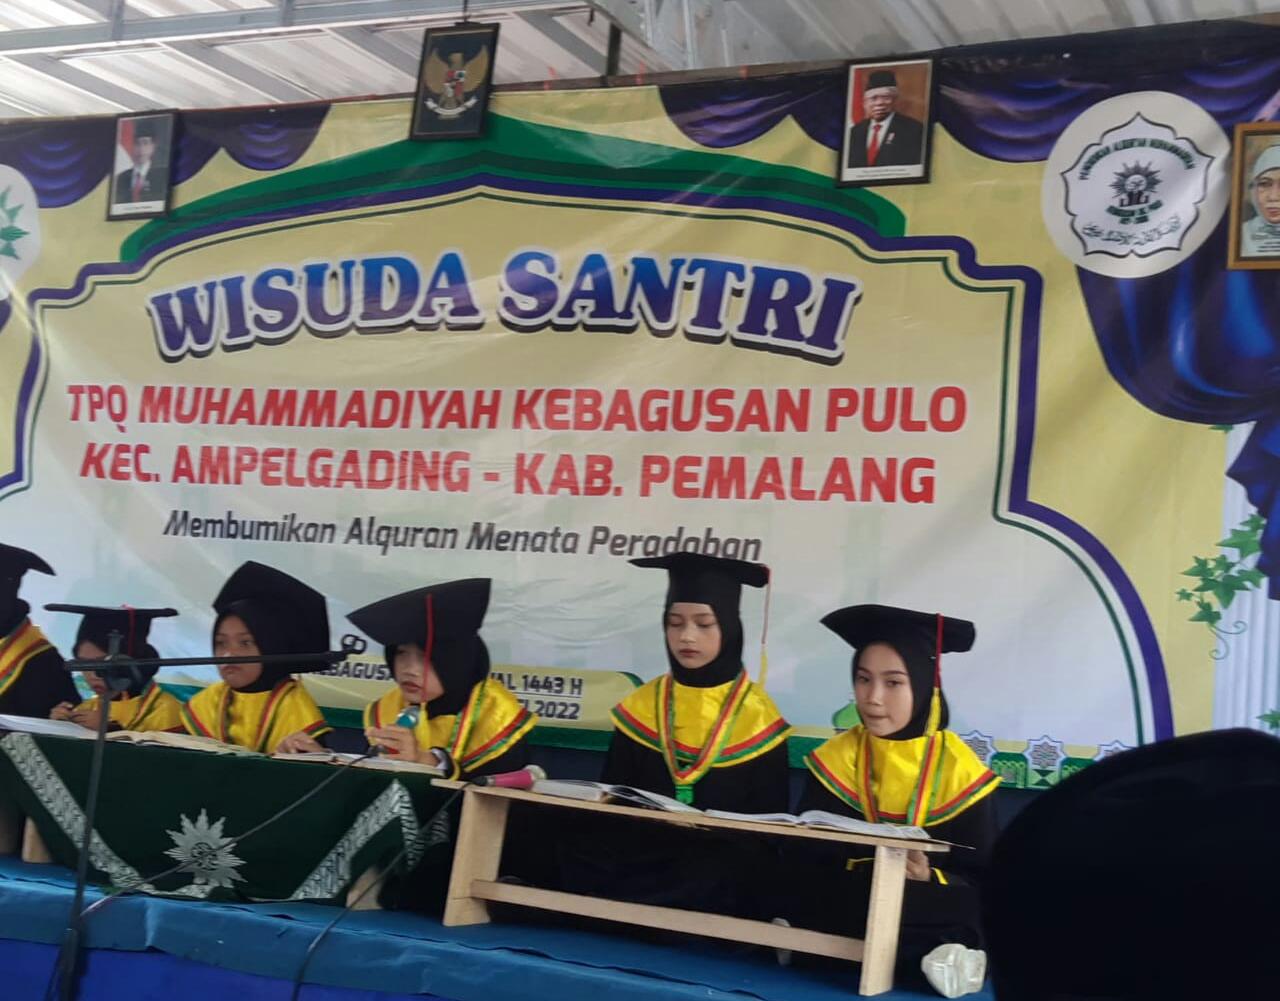 Acara Wisuda Santri TPQ Muhammadiyah di Desa Kebagusan Kecamatan Ampelgading